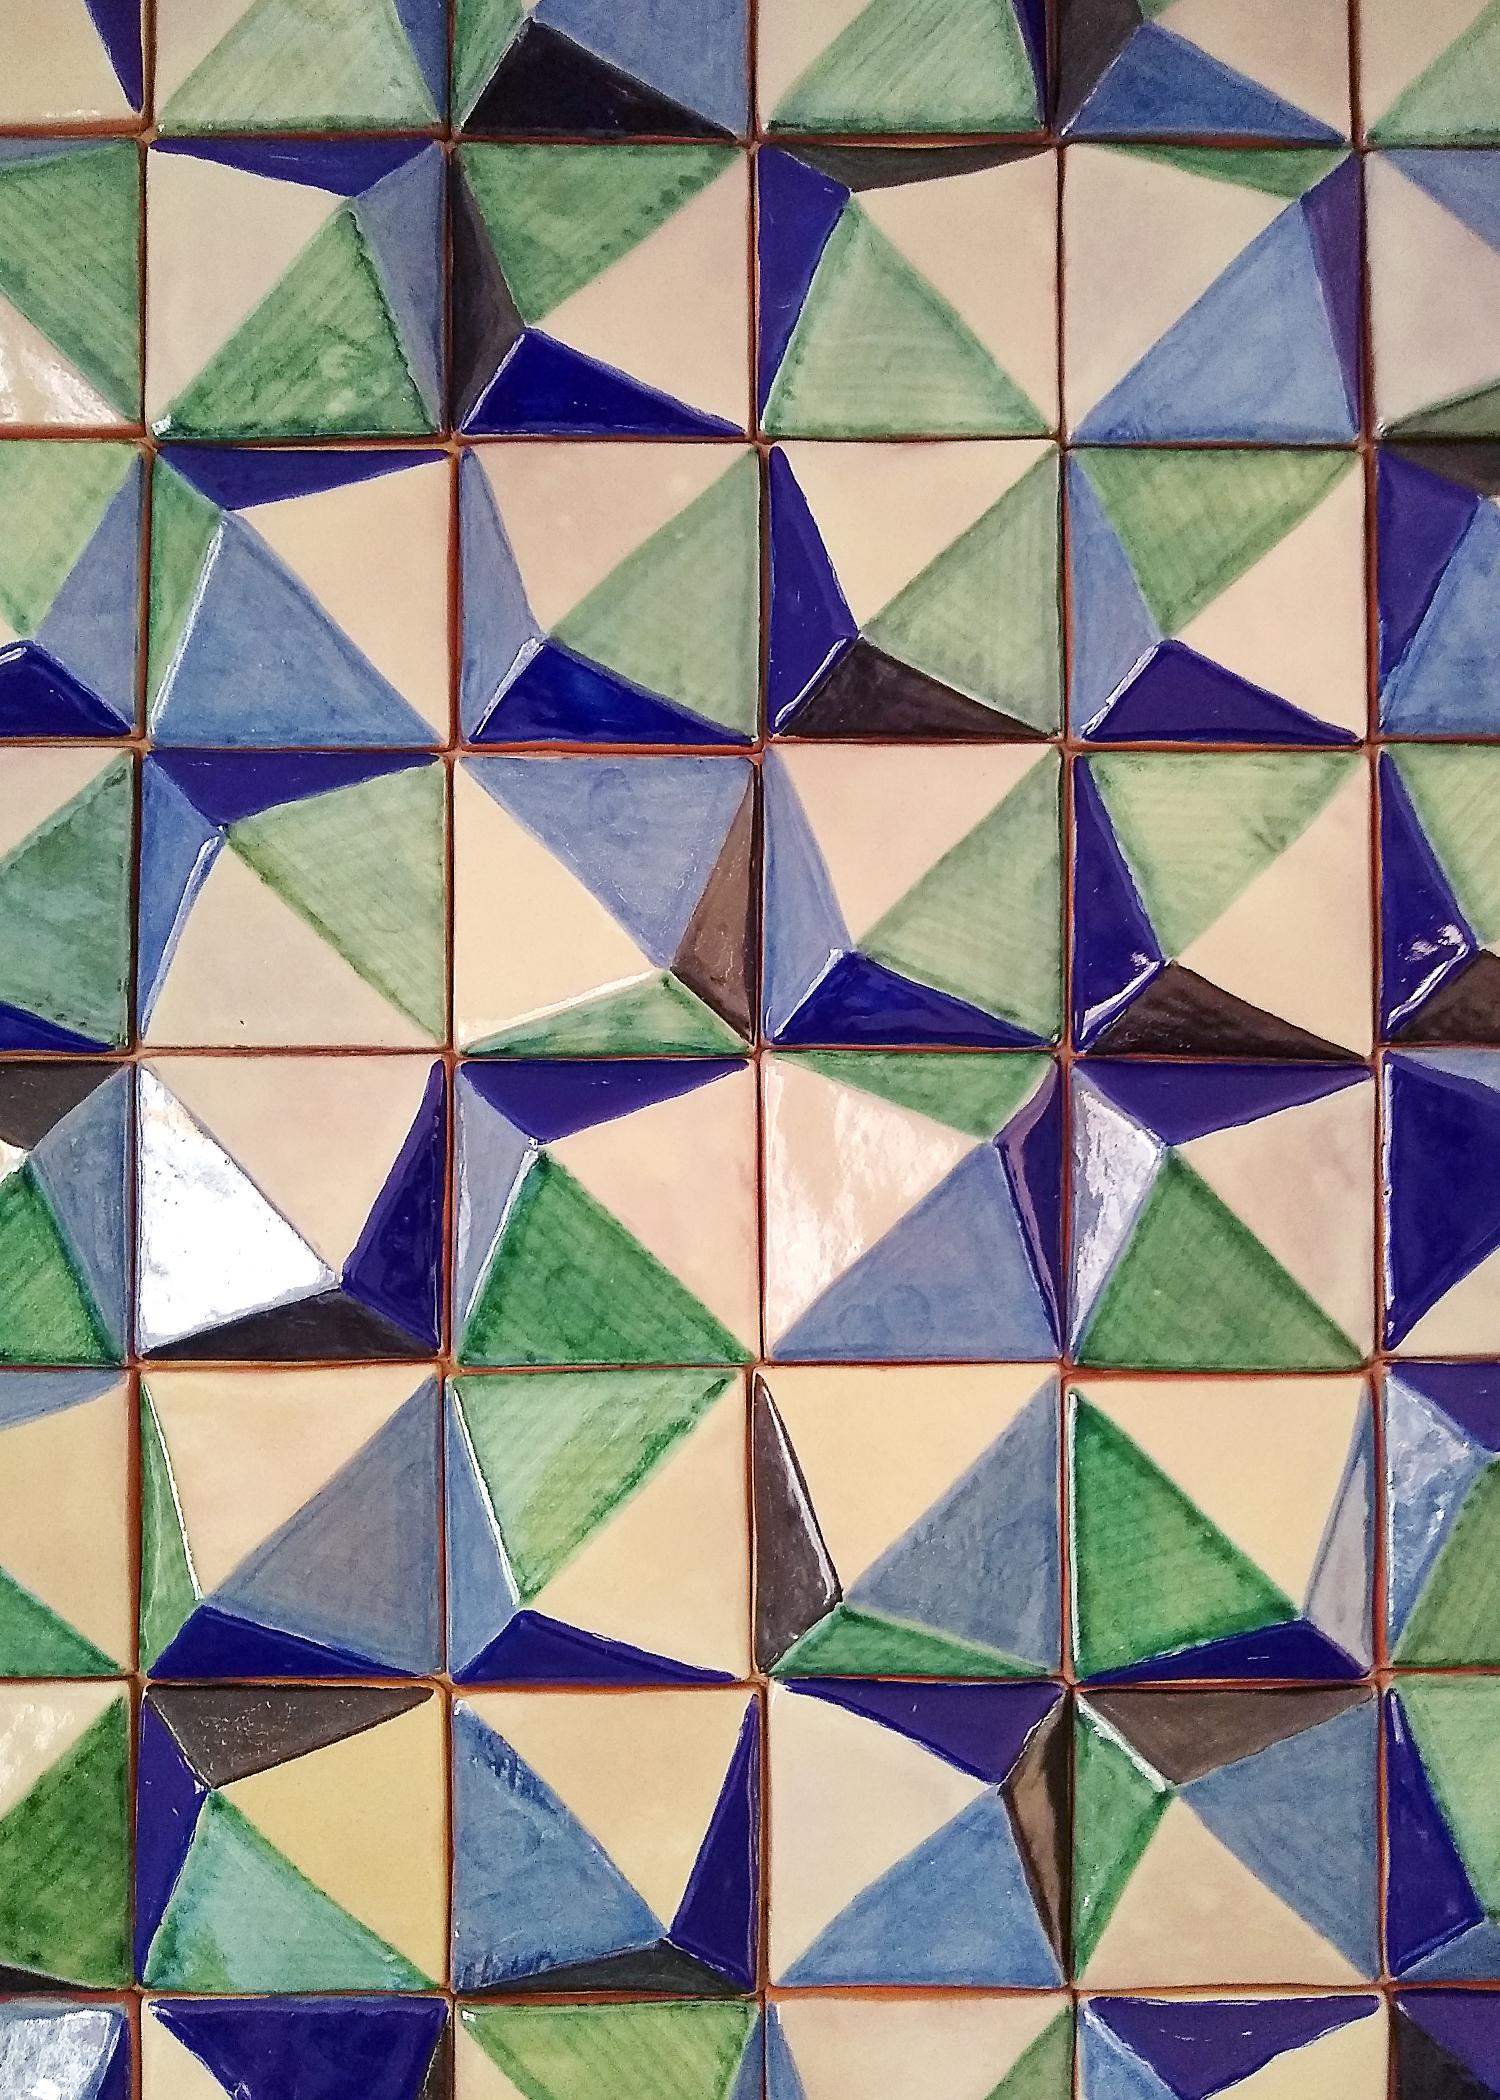 Ce carreau azulejo contemporain forme une mosaïque parfaite pour la décoration d'une cuisine ou de tout espace extérieur. Fabriqué selon la technique Talavera. L'artiste Cesar Torres dresse le portrait de l'art colonial du Mexique, mais cette fois